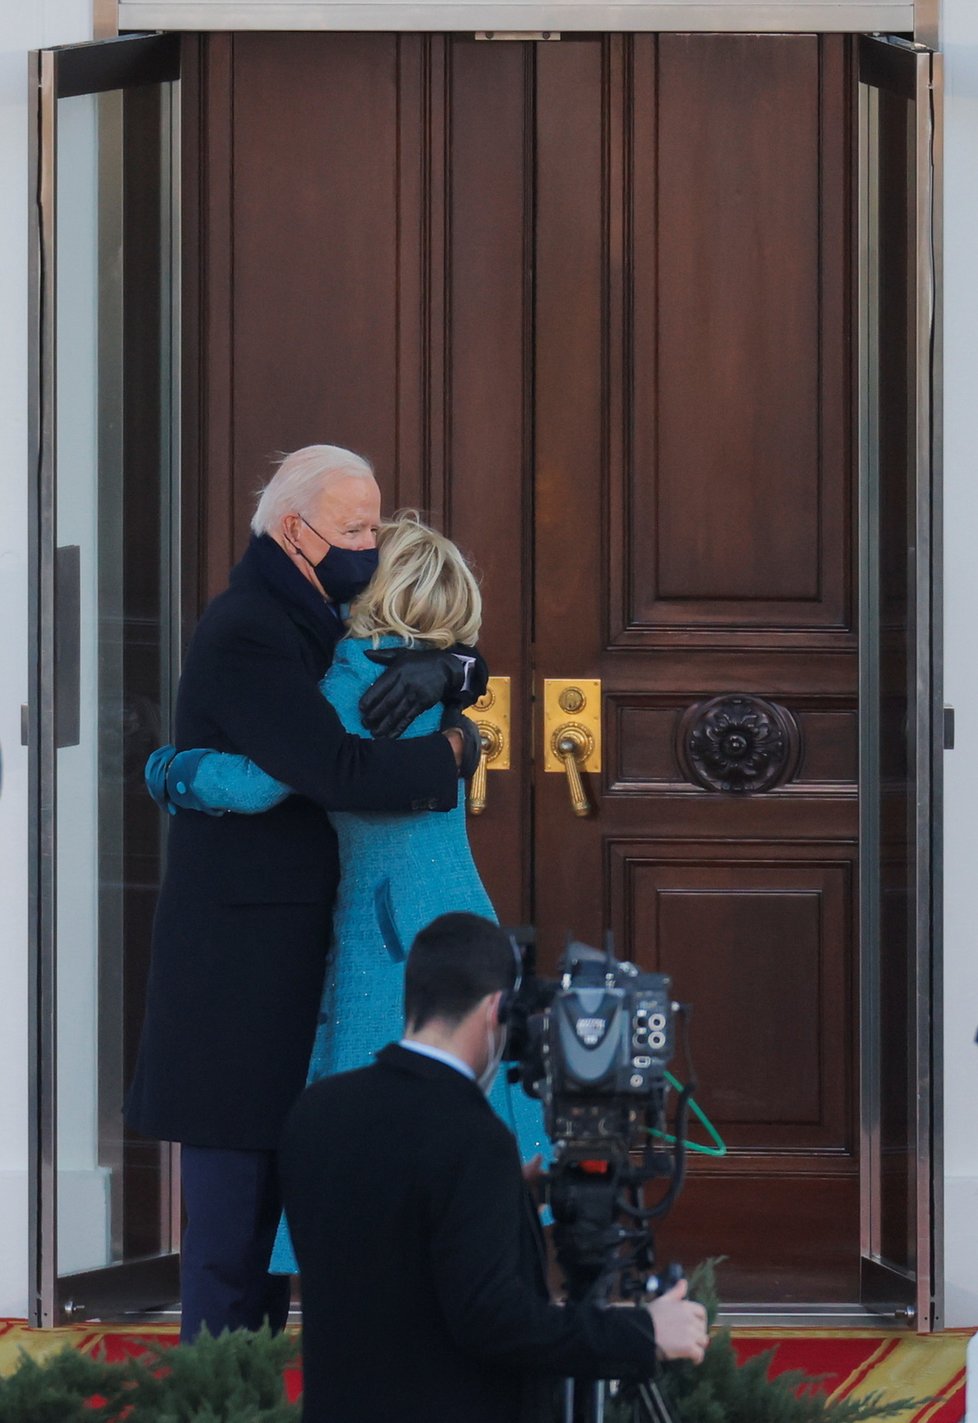 První pár USA Joe a Jill Bidenovi v Bílém domě, (20.01.2021).